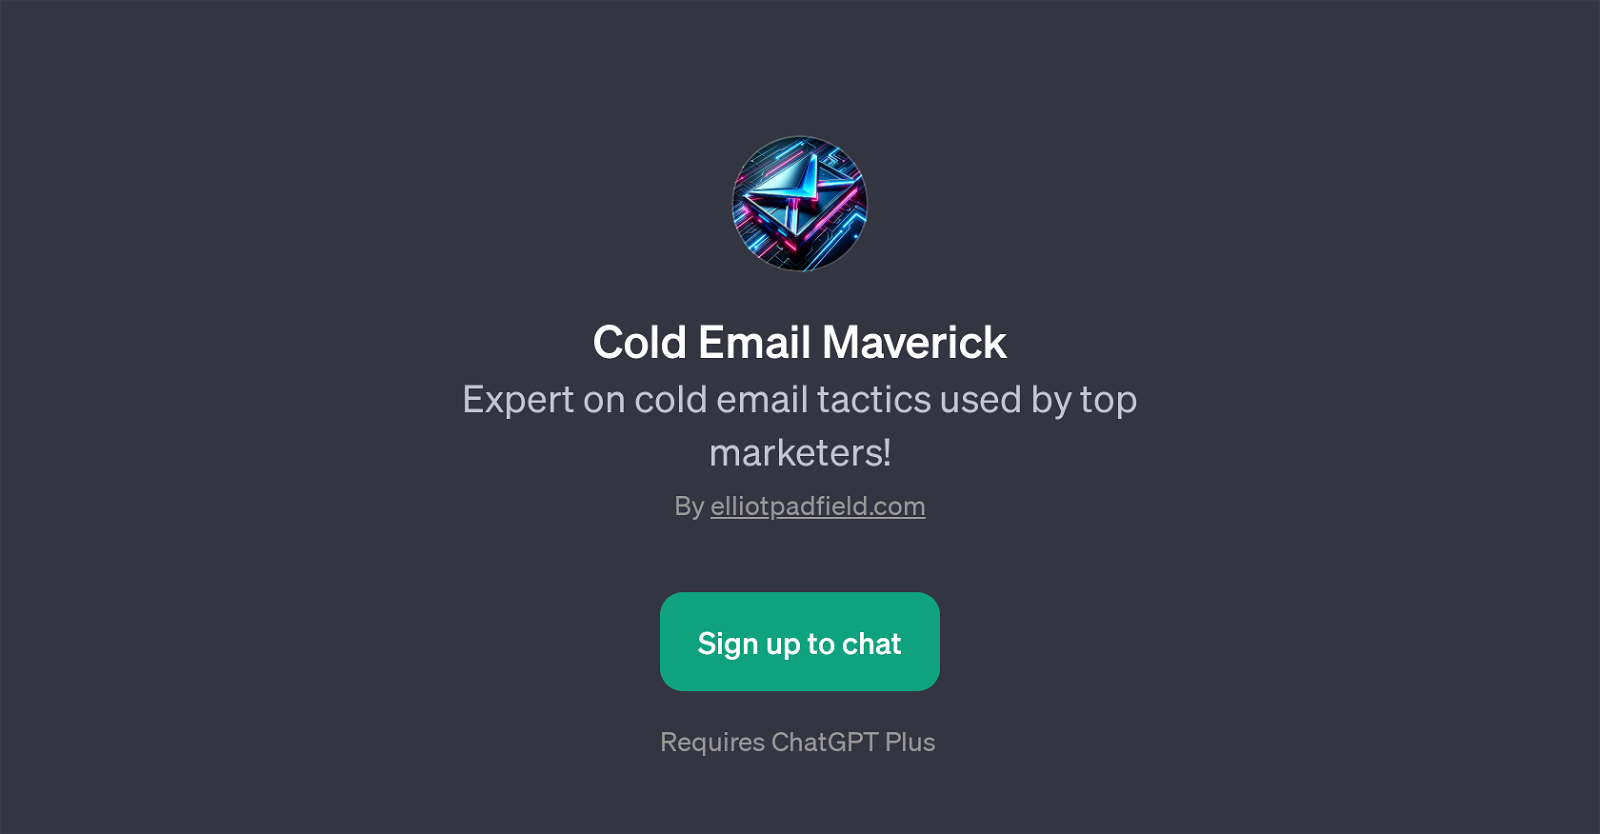 Cold Email Maverick website